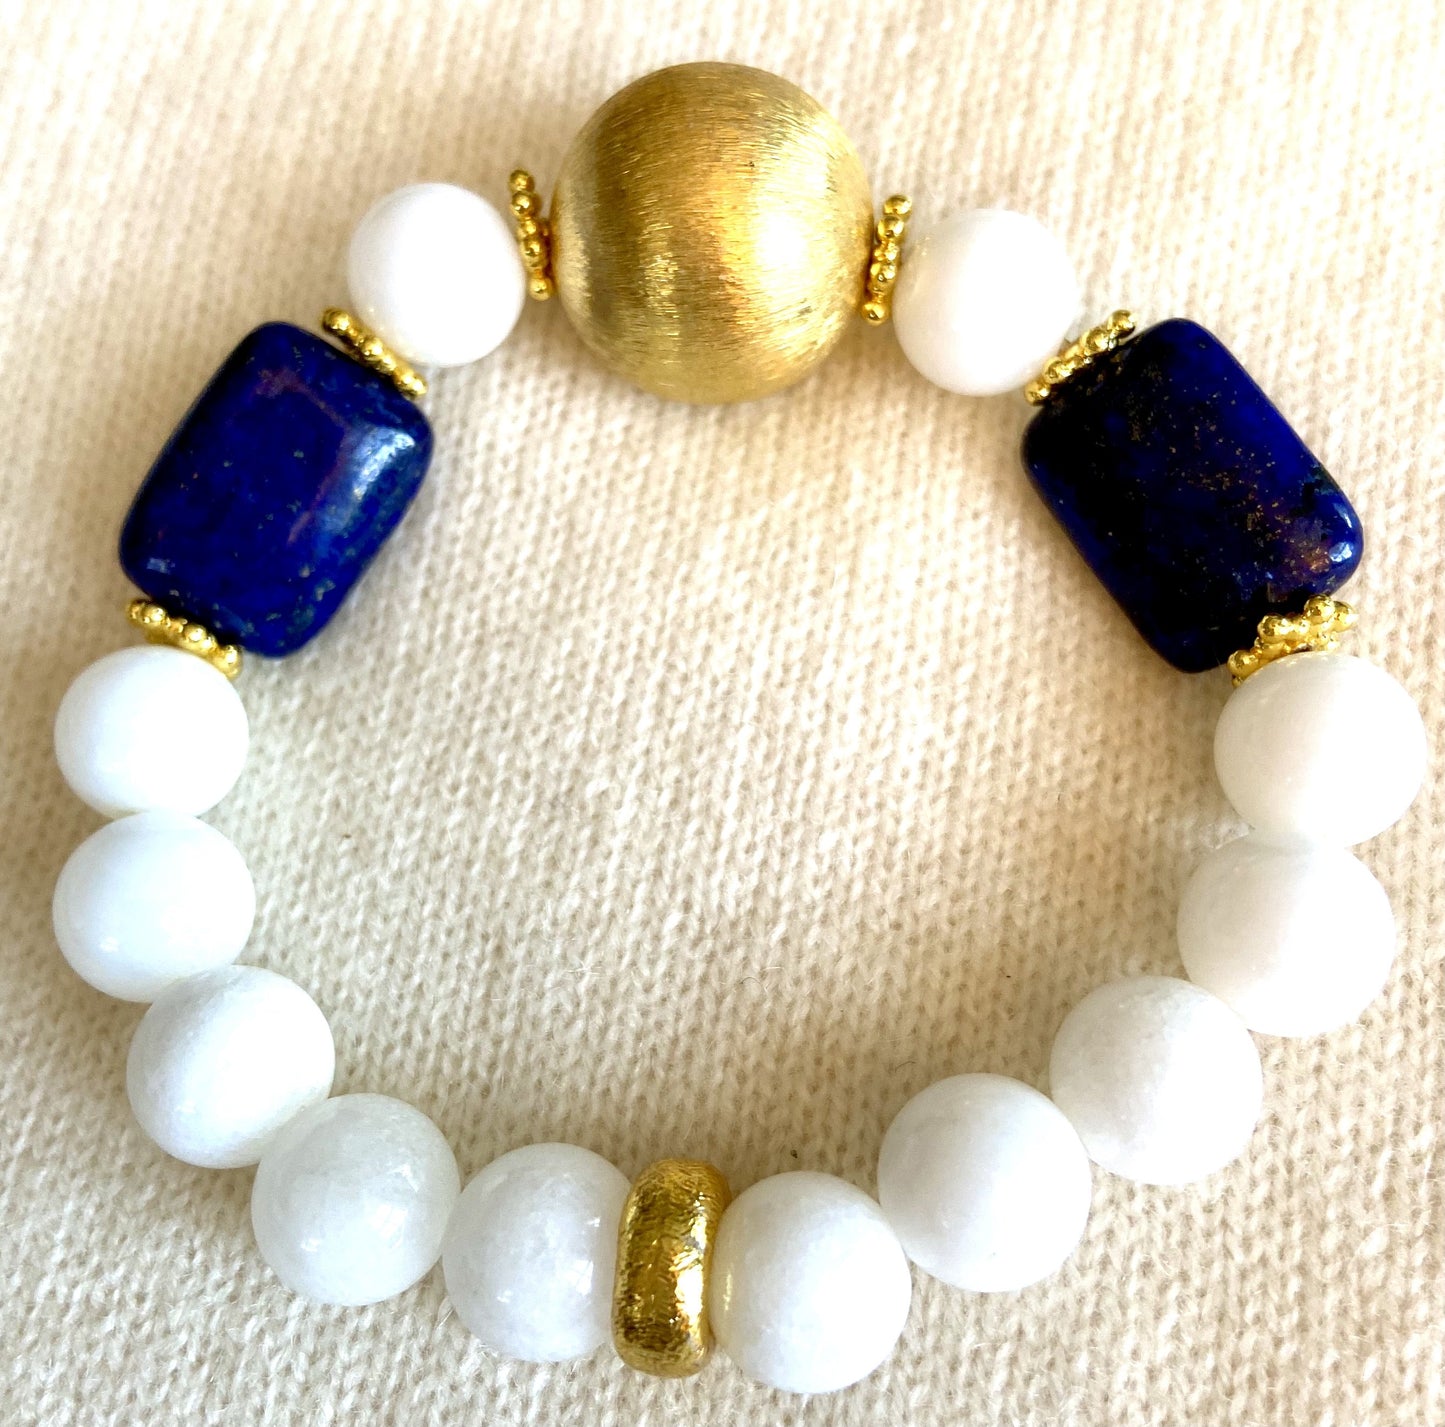 Lapis and Alabaster Gemstones 7.5" Bracelet with a 18k Brushed Gold Vermeil Center Bead